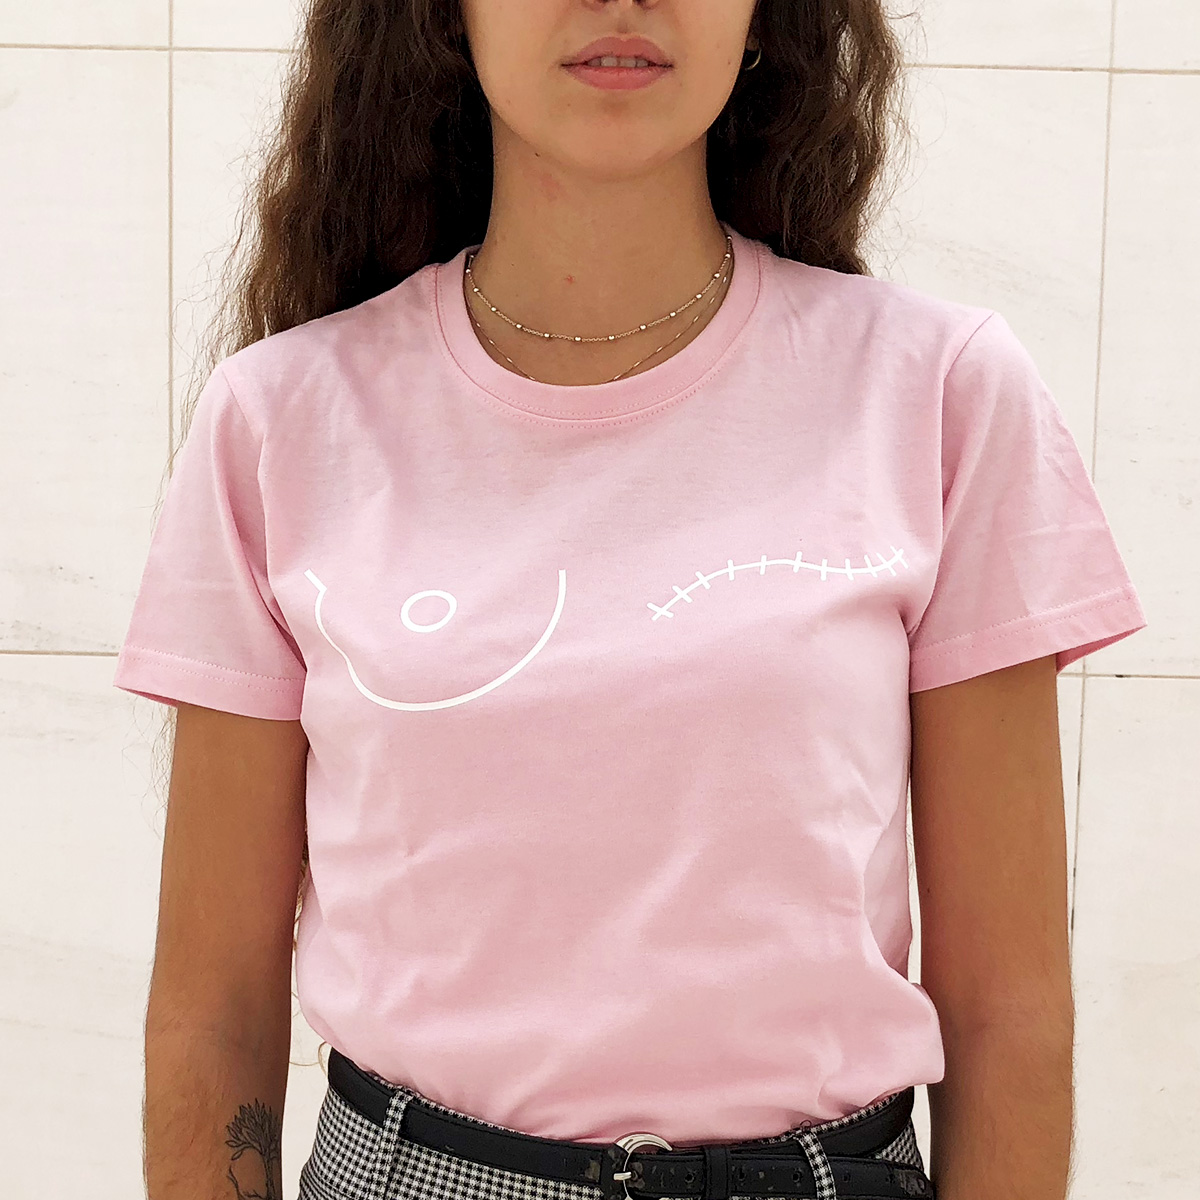 Camiseta rosa save the mama – save the mama